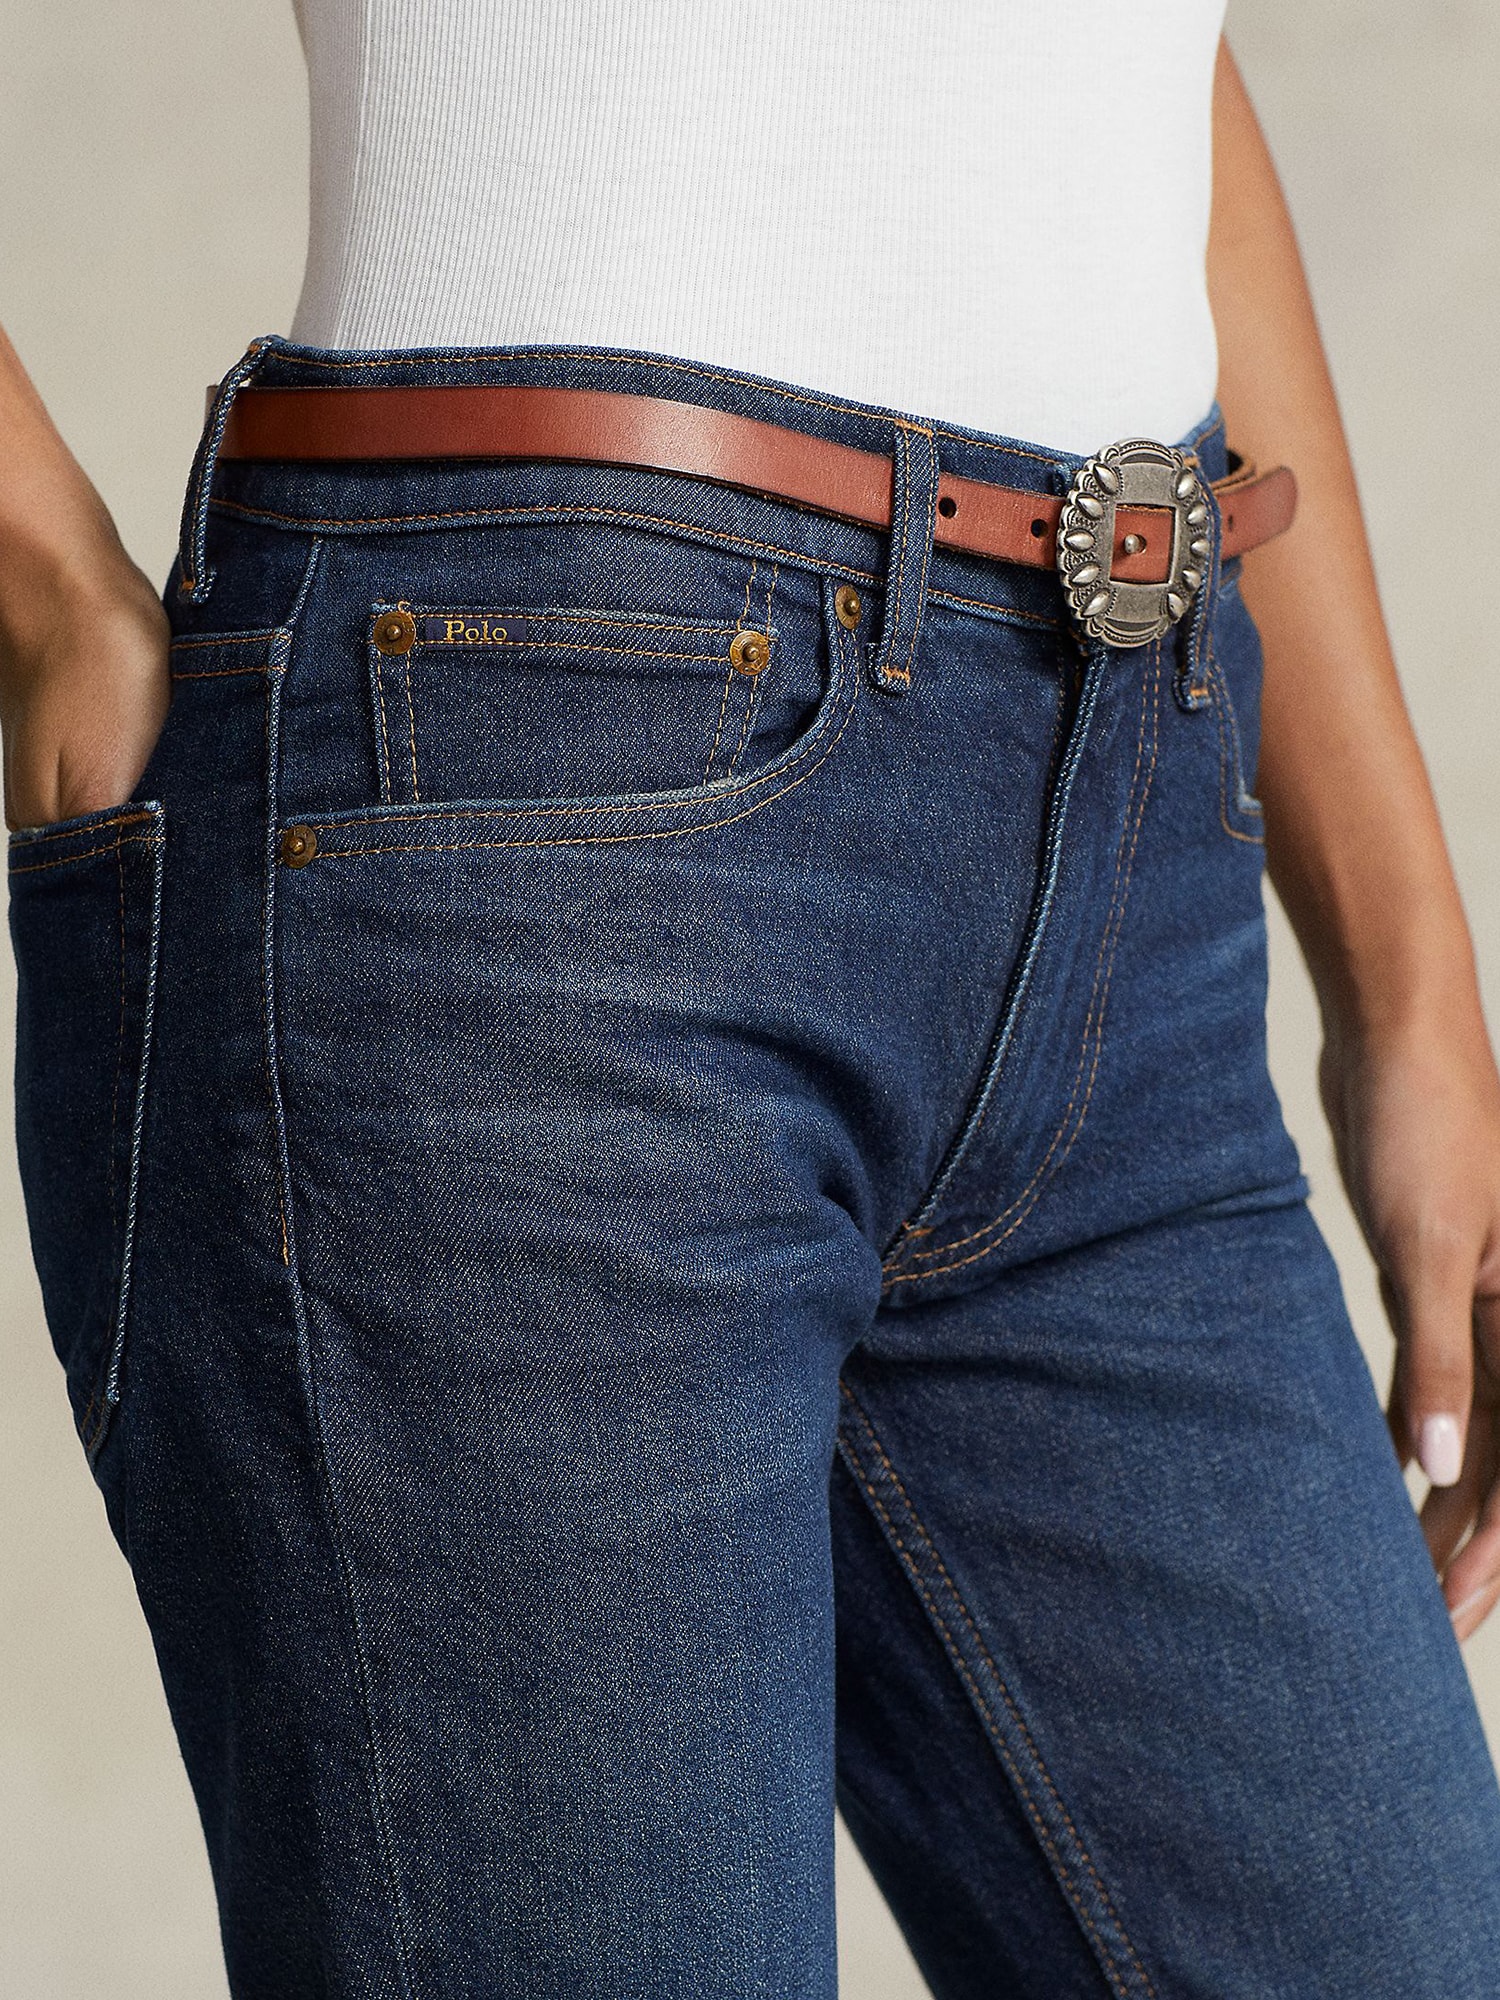 Jeans von Polo Ralph Lauren